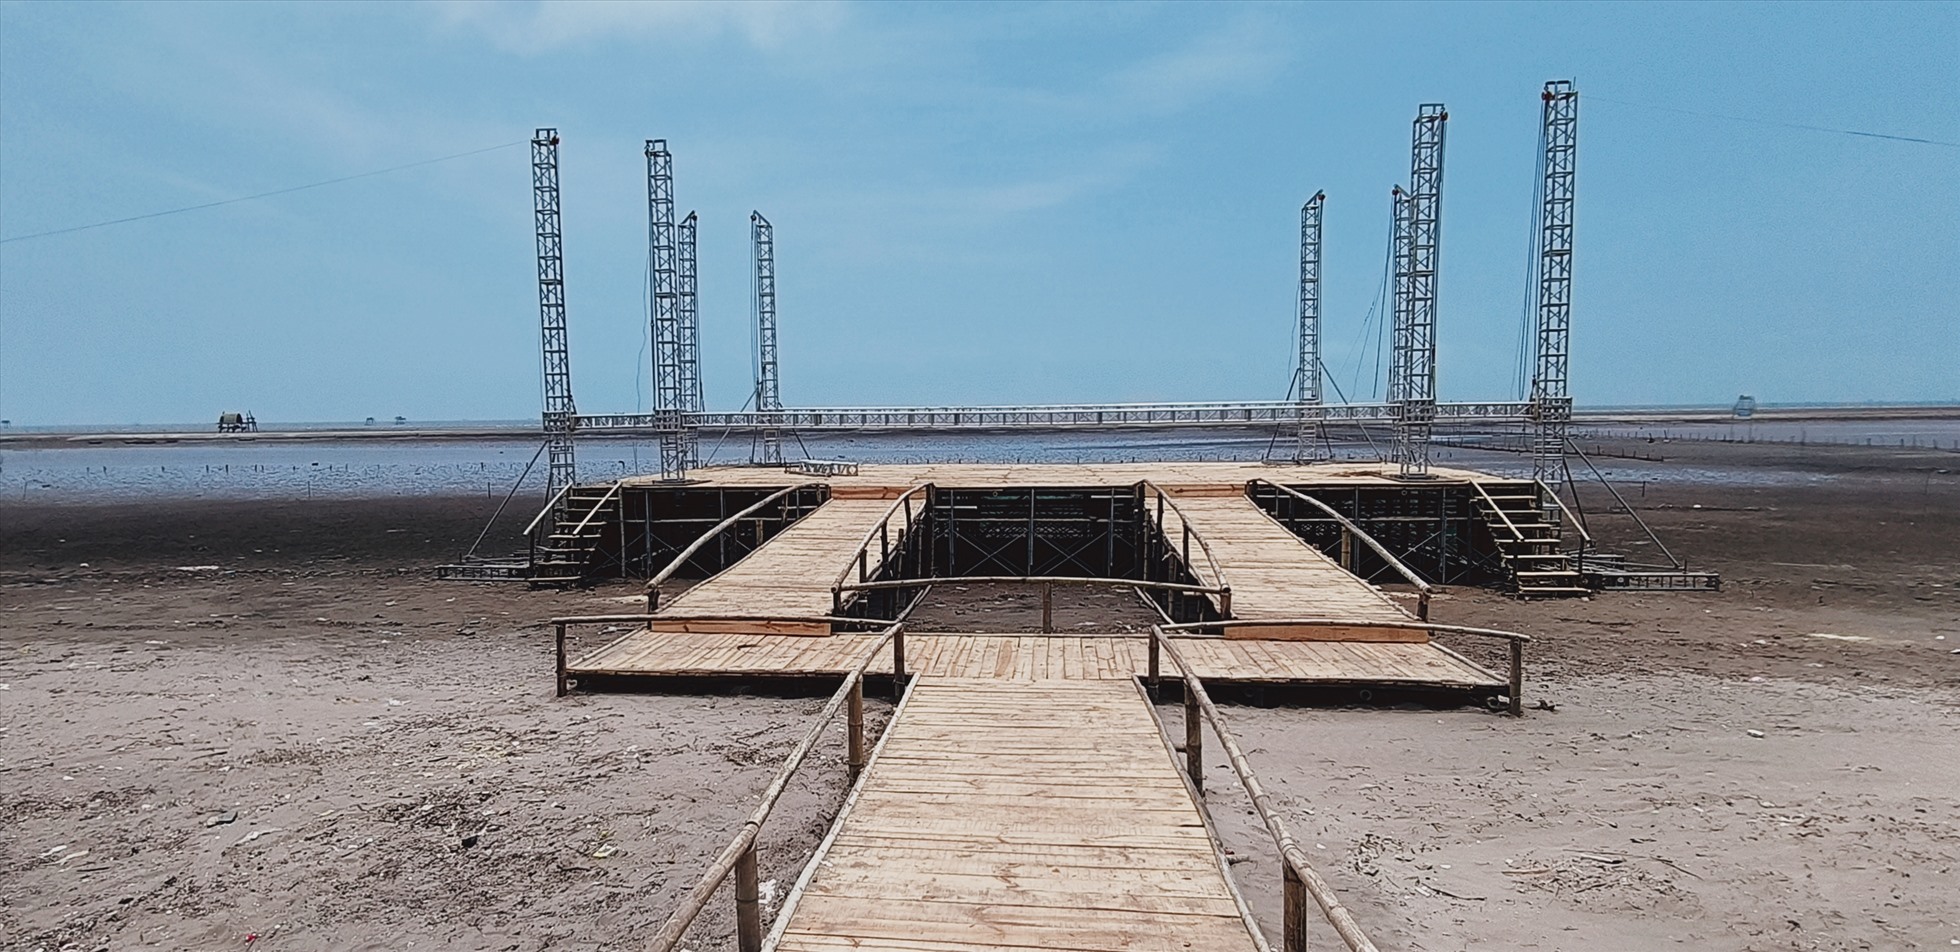 Khu vực sân khấu ngoài trời được dụng ngay khu bãi biển trung tâm Cồn Đen. Ảnh: Trung Du